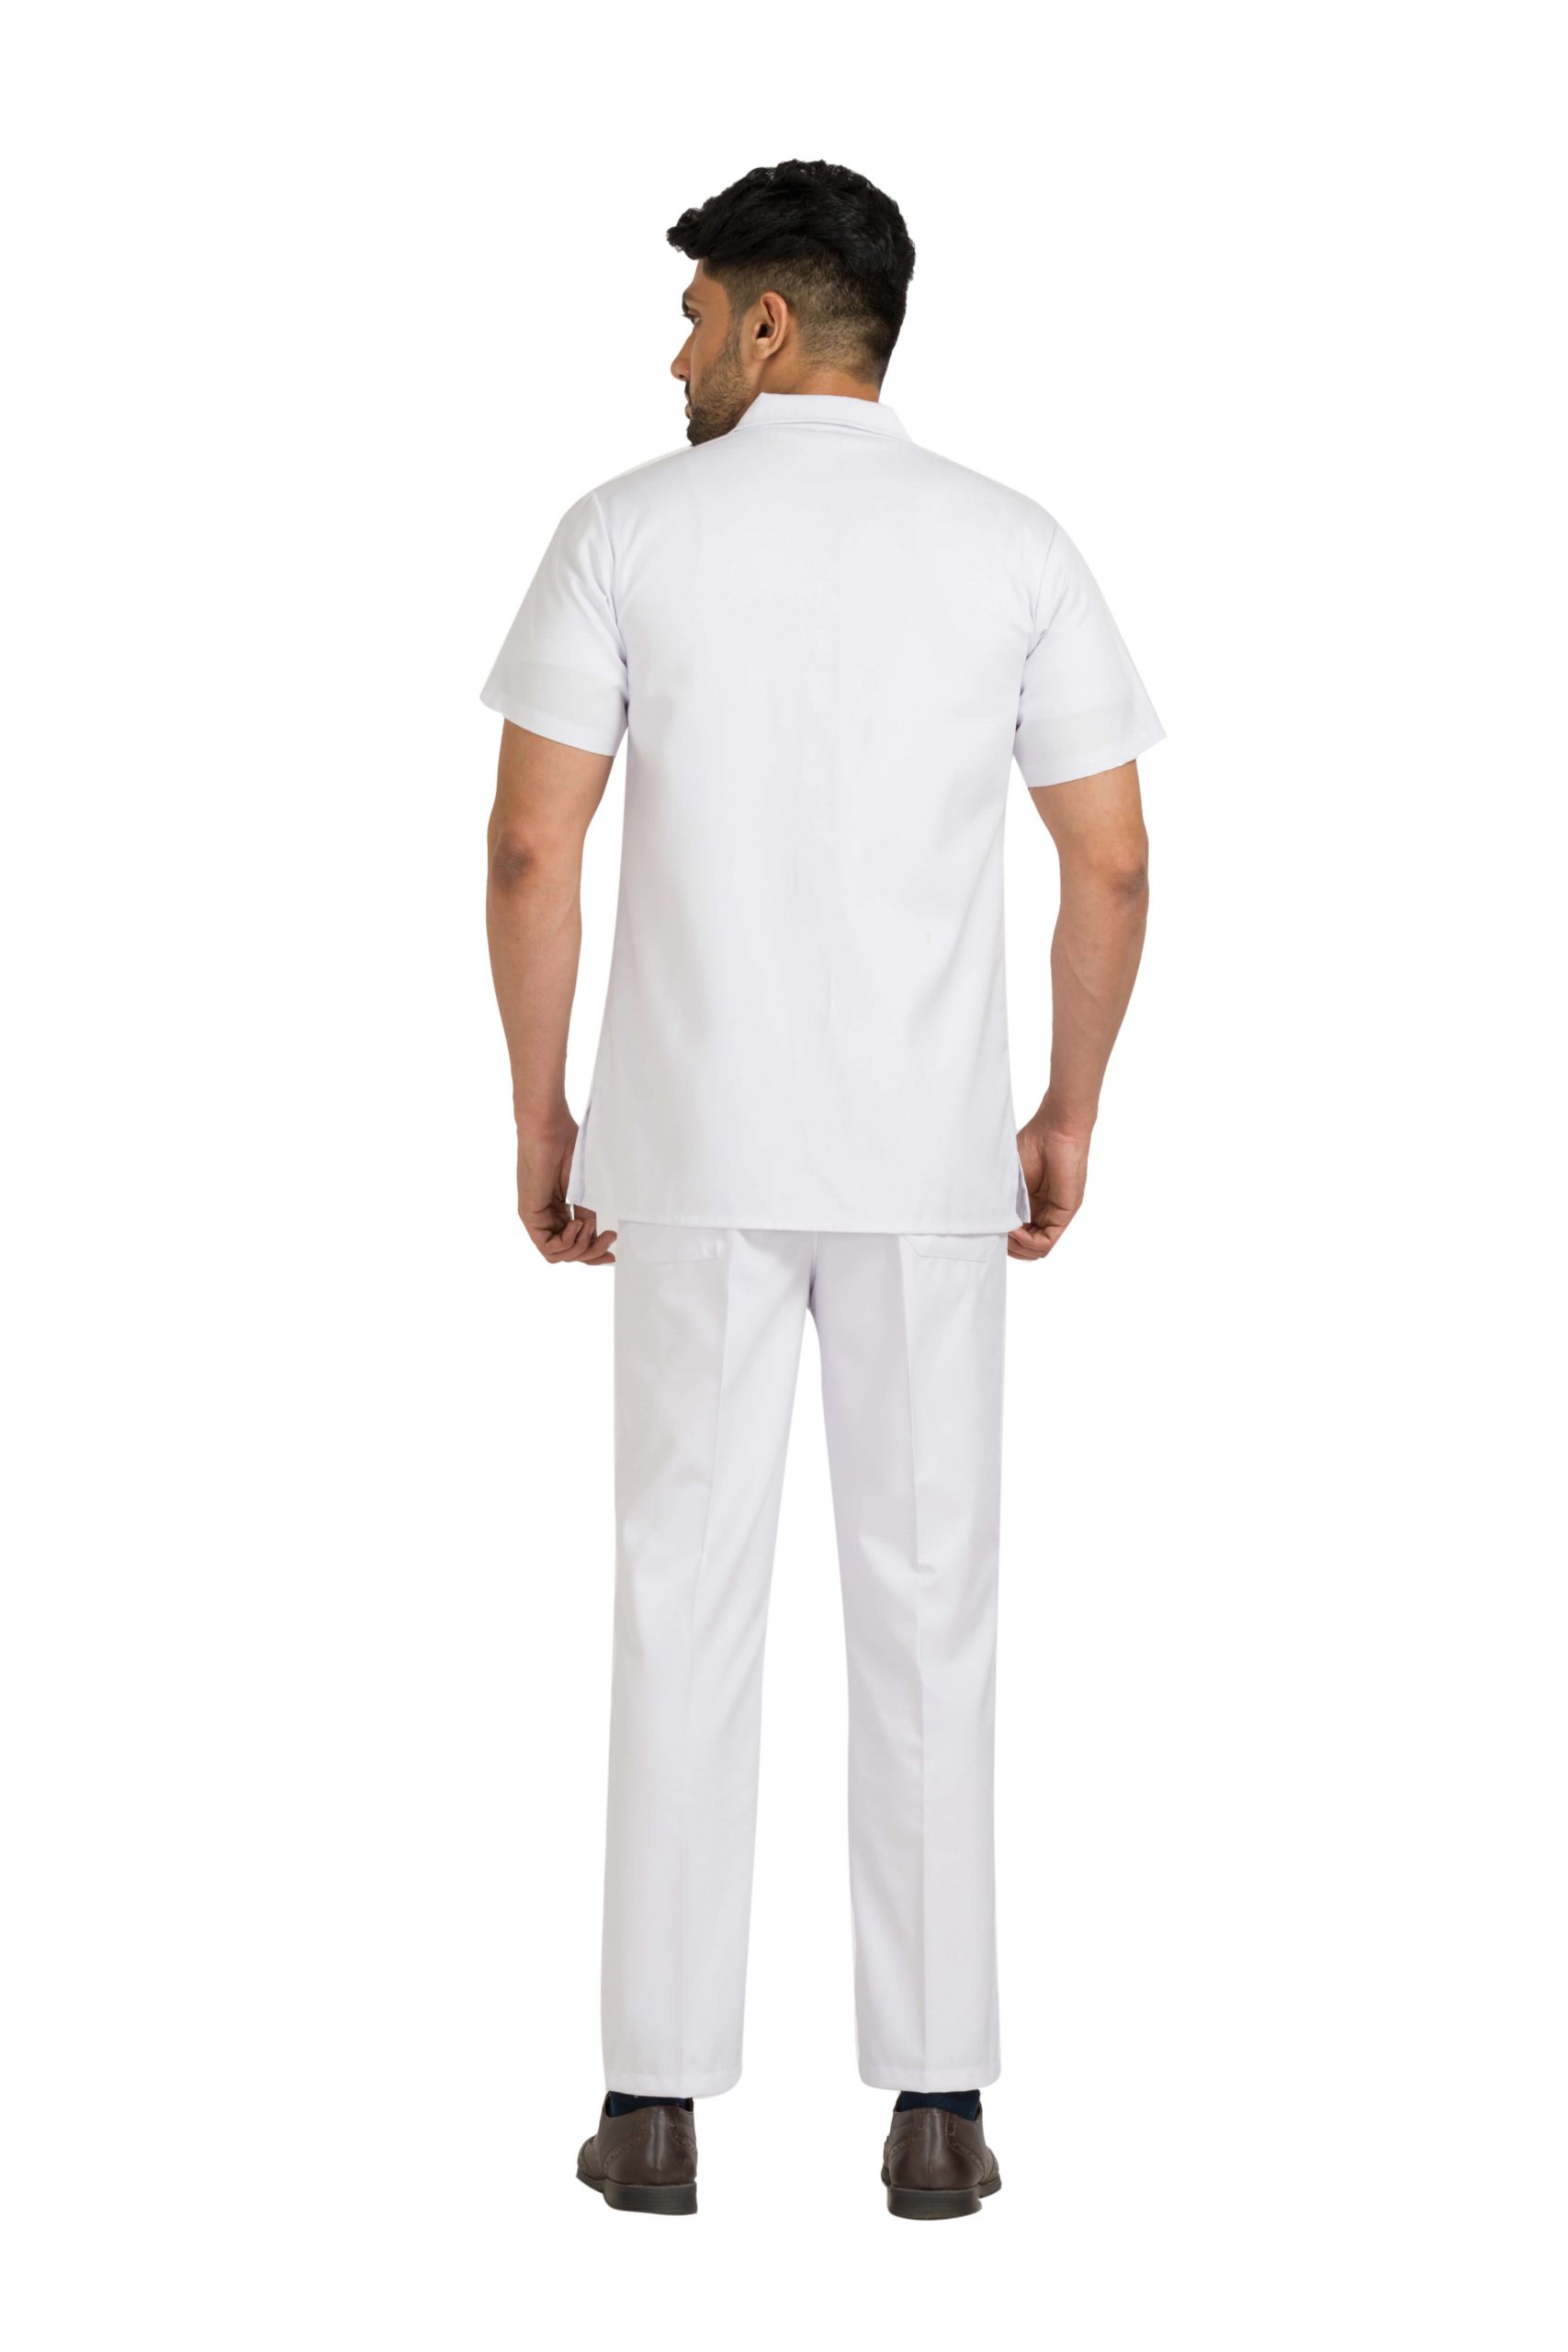 White Cotton Blend Comfort Fit Lab Coat